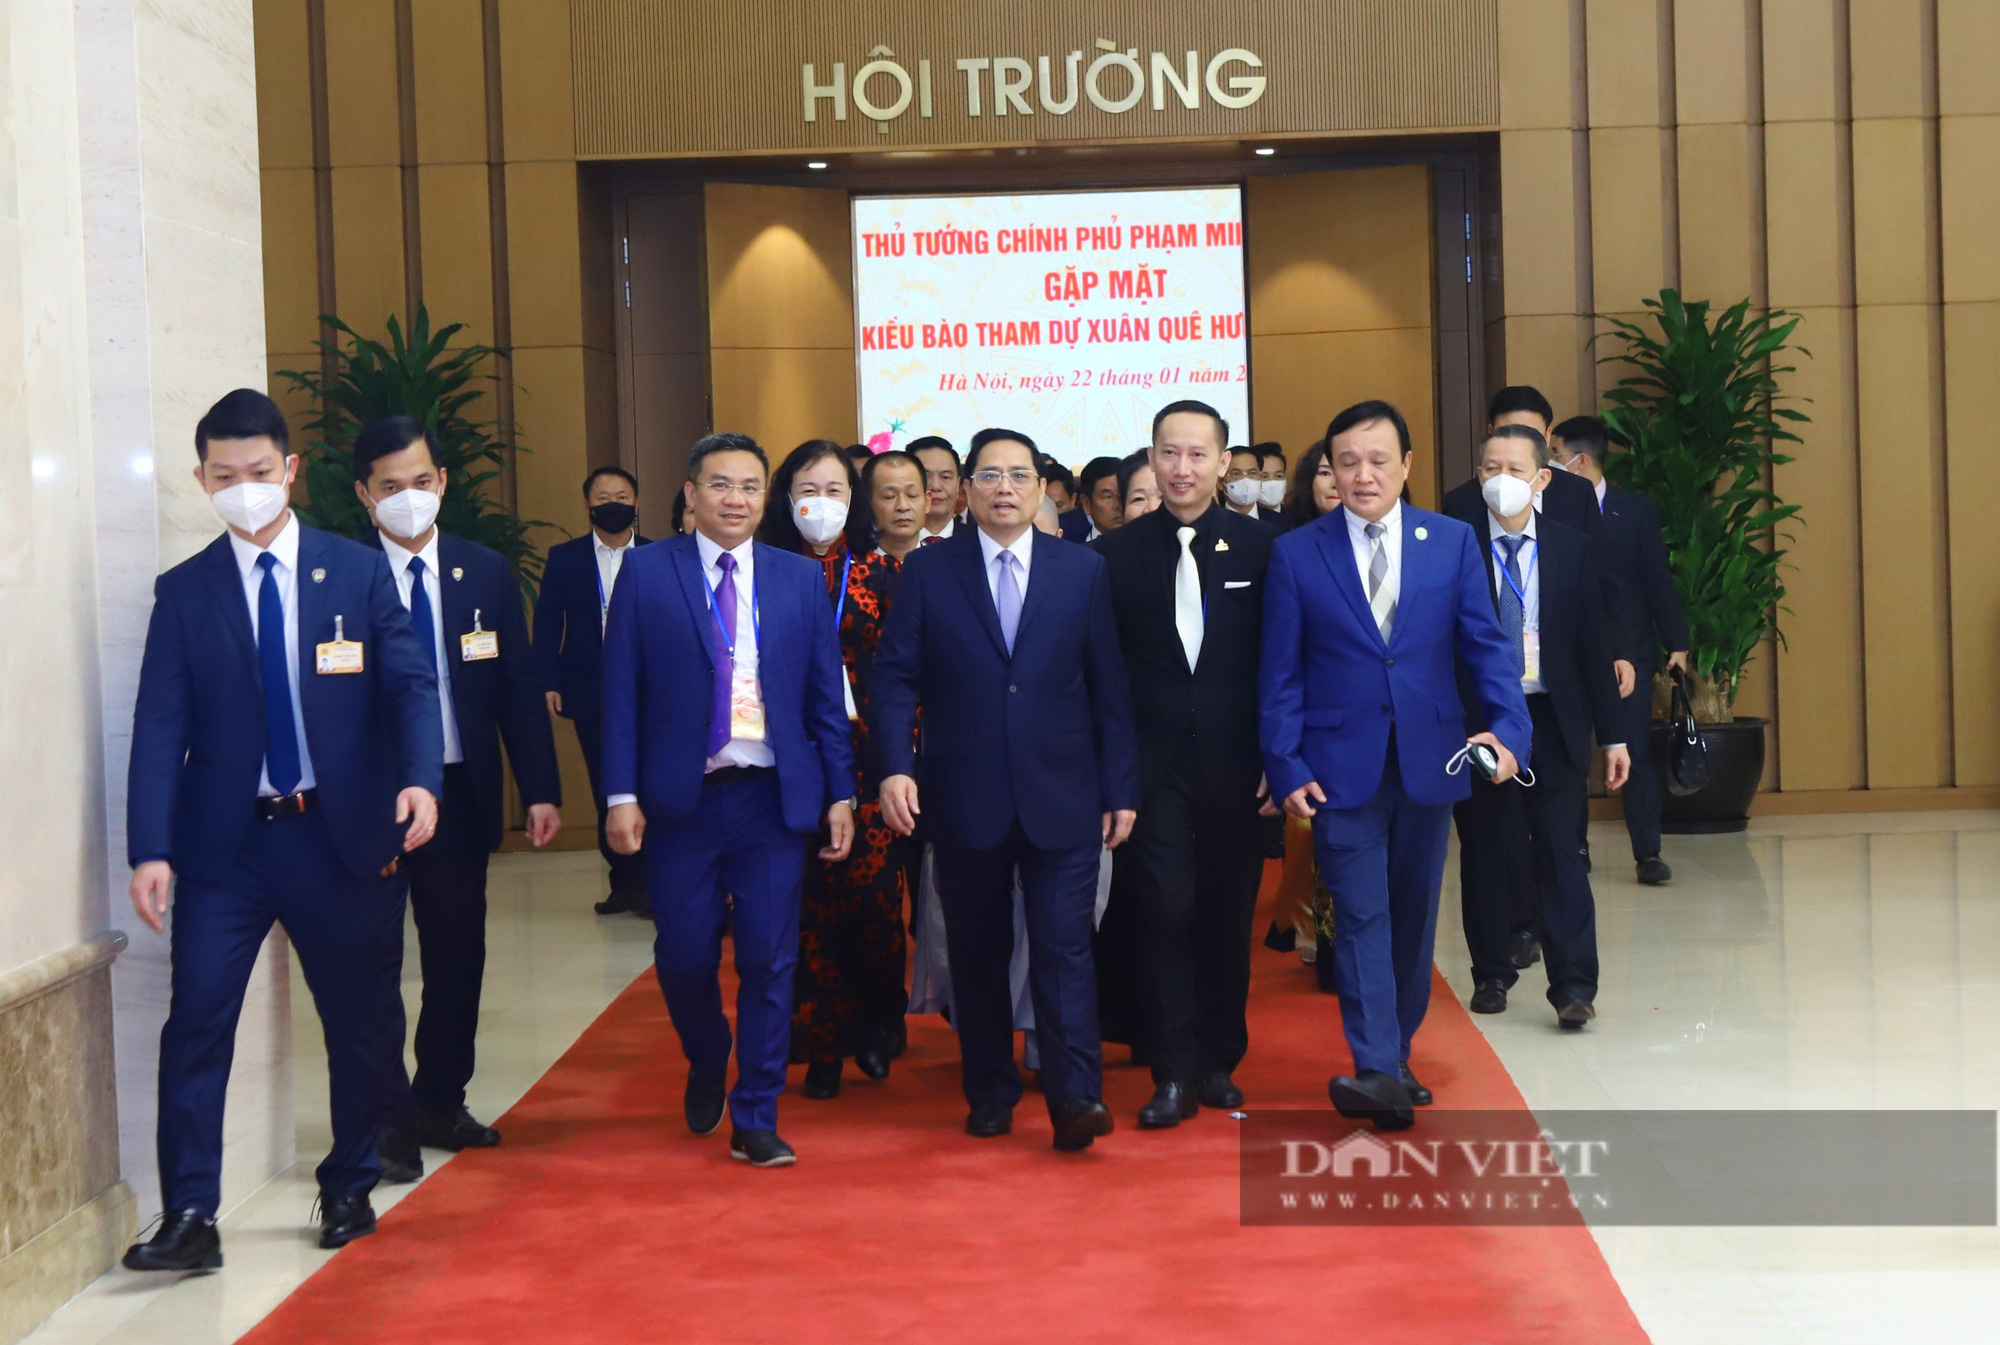 Thủ tướng Phạm Minh Chính gặp mặt kiều bào dự Xuân quê hương 2022 - Ảnh 1.